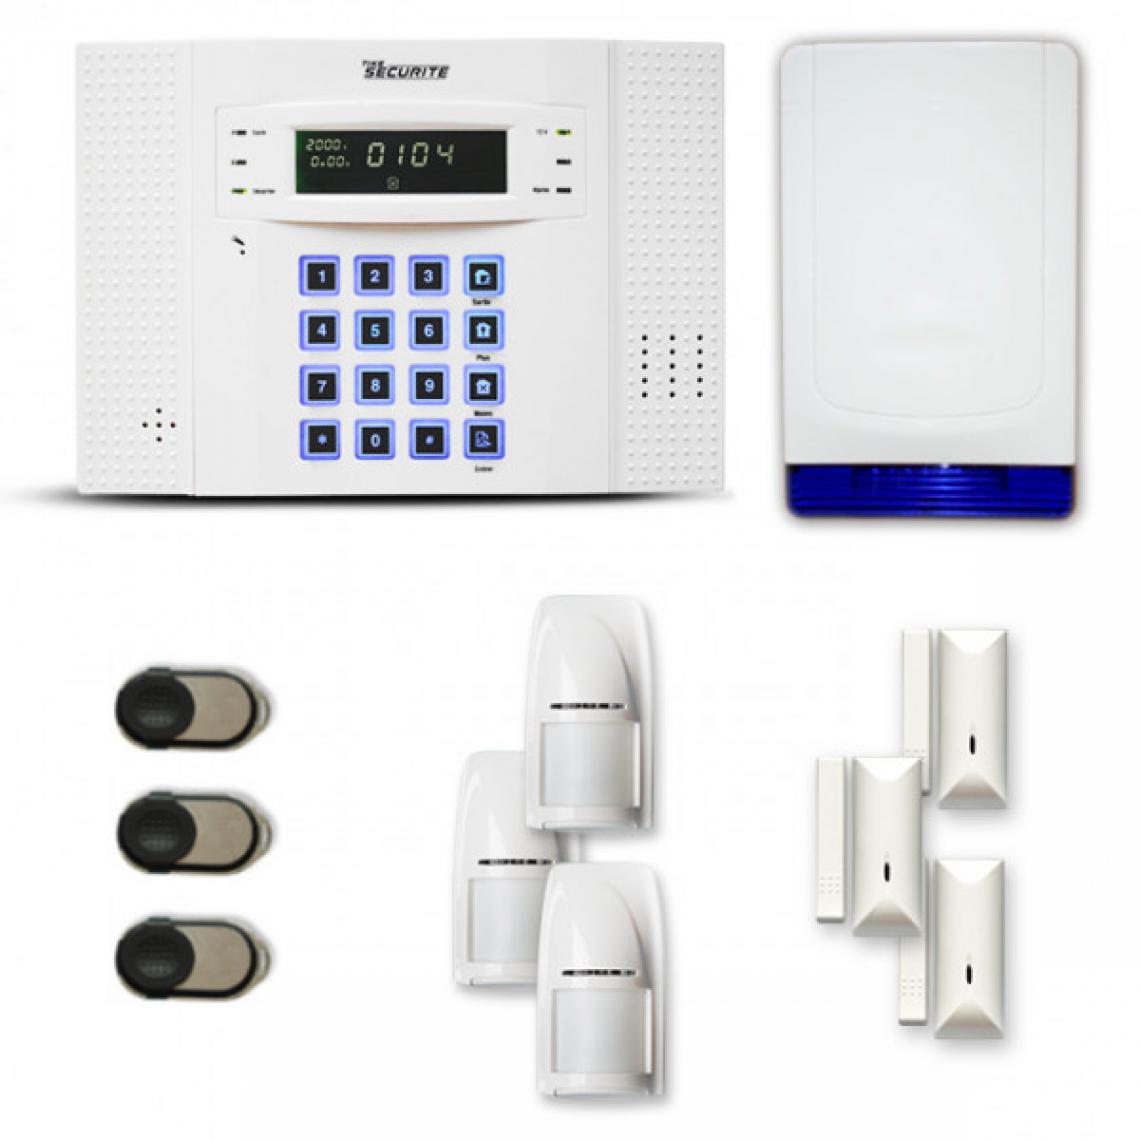 Tike Securite - Alarme maison sans fil DNB16 Compatible Box internet - Alarme connectée